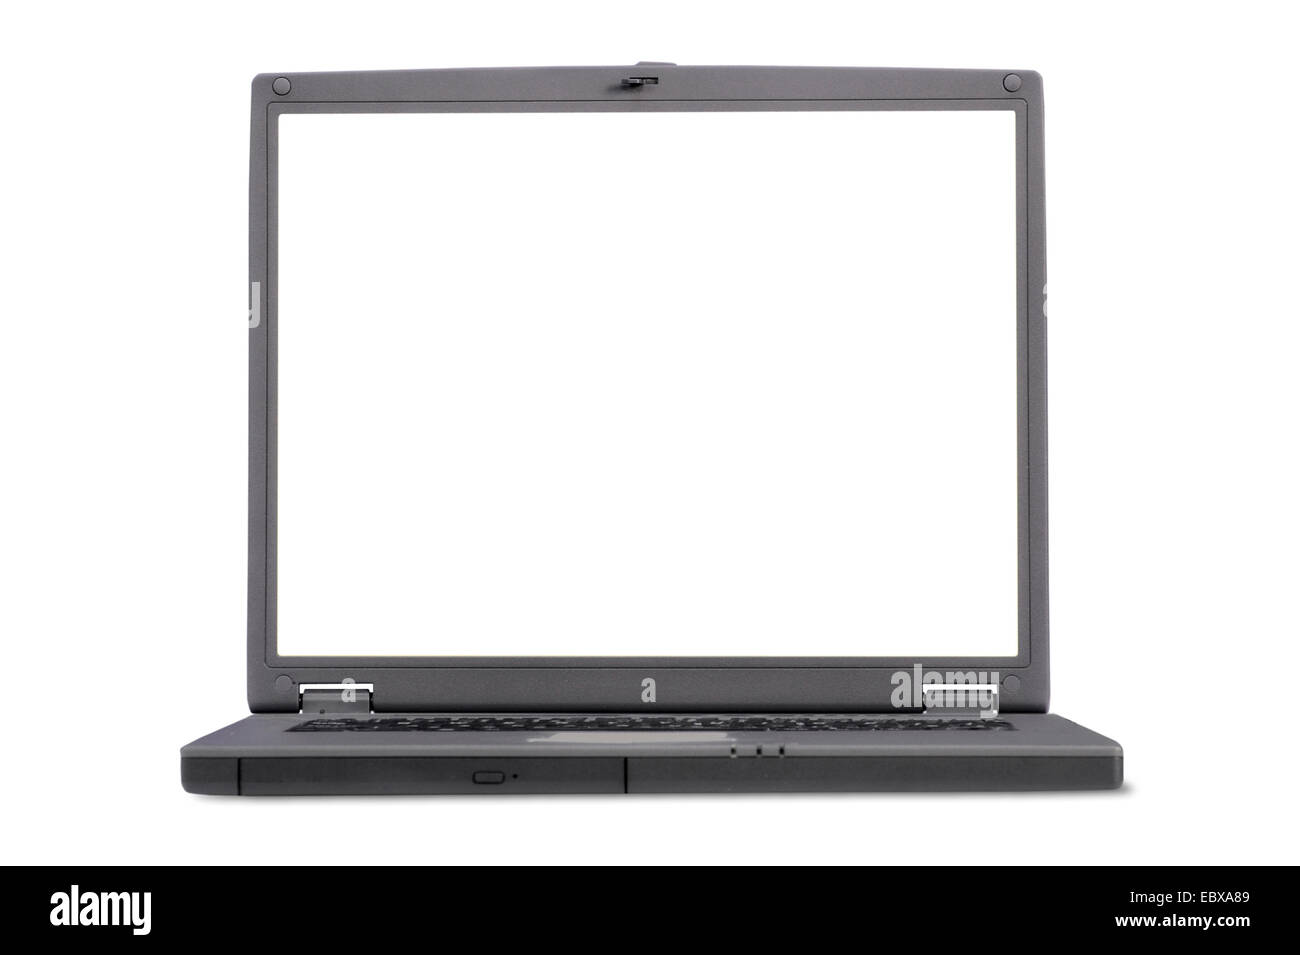 Laptop vista dal lato anteriore con spazio per la scrittura o mettendo la propria immagine Foto Stock